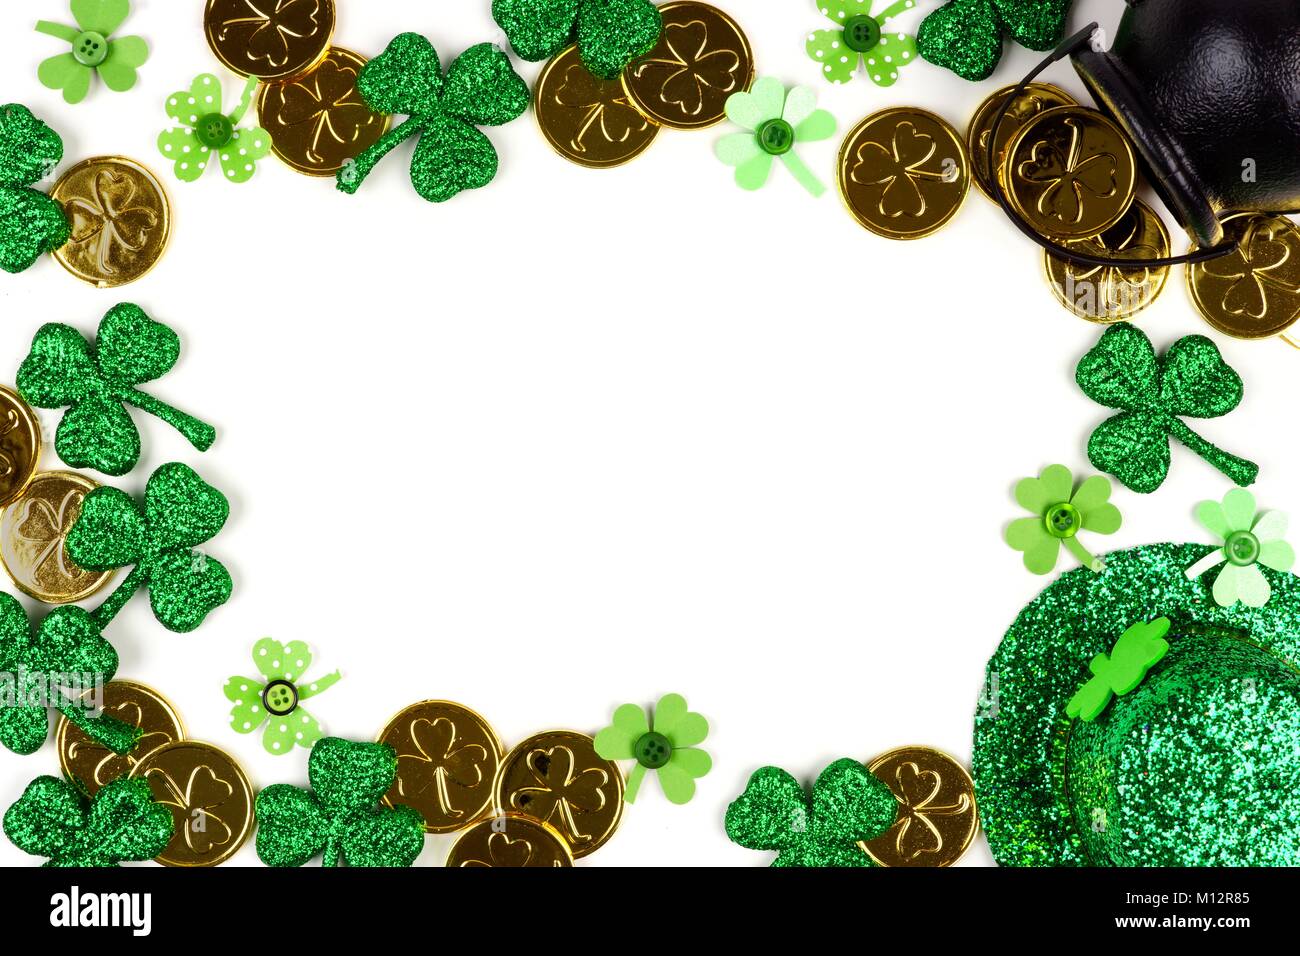 St Patricks Day Rahmen isoliert auf einem weißen Hintergrund. Oben Ansicht mit Pot of Gold, Shamrocks und Leprechaun hat. Stockfoto